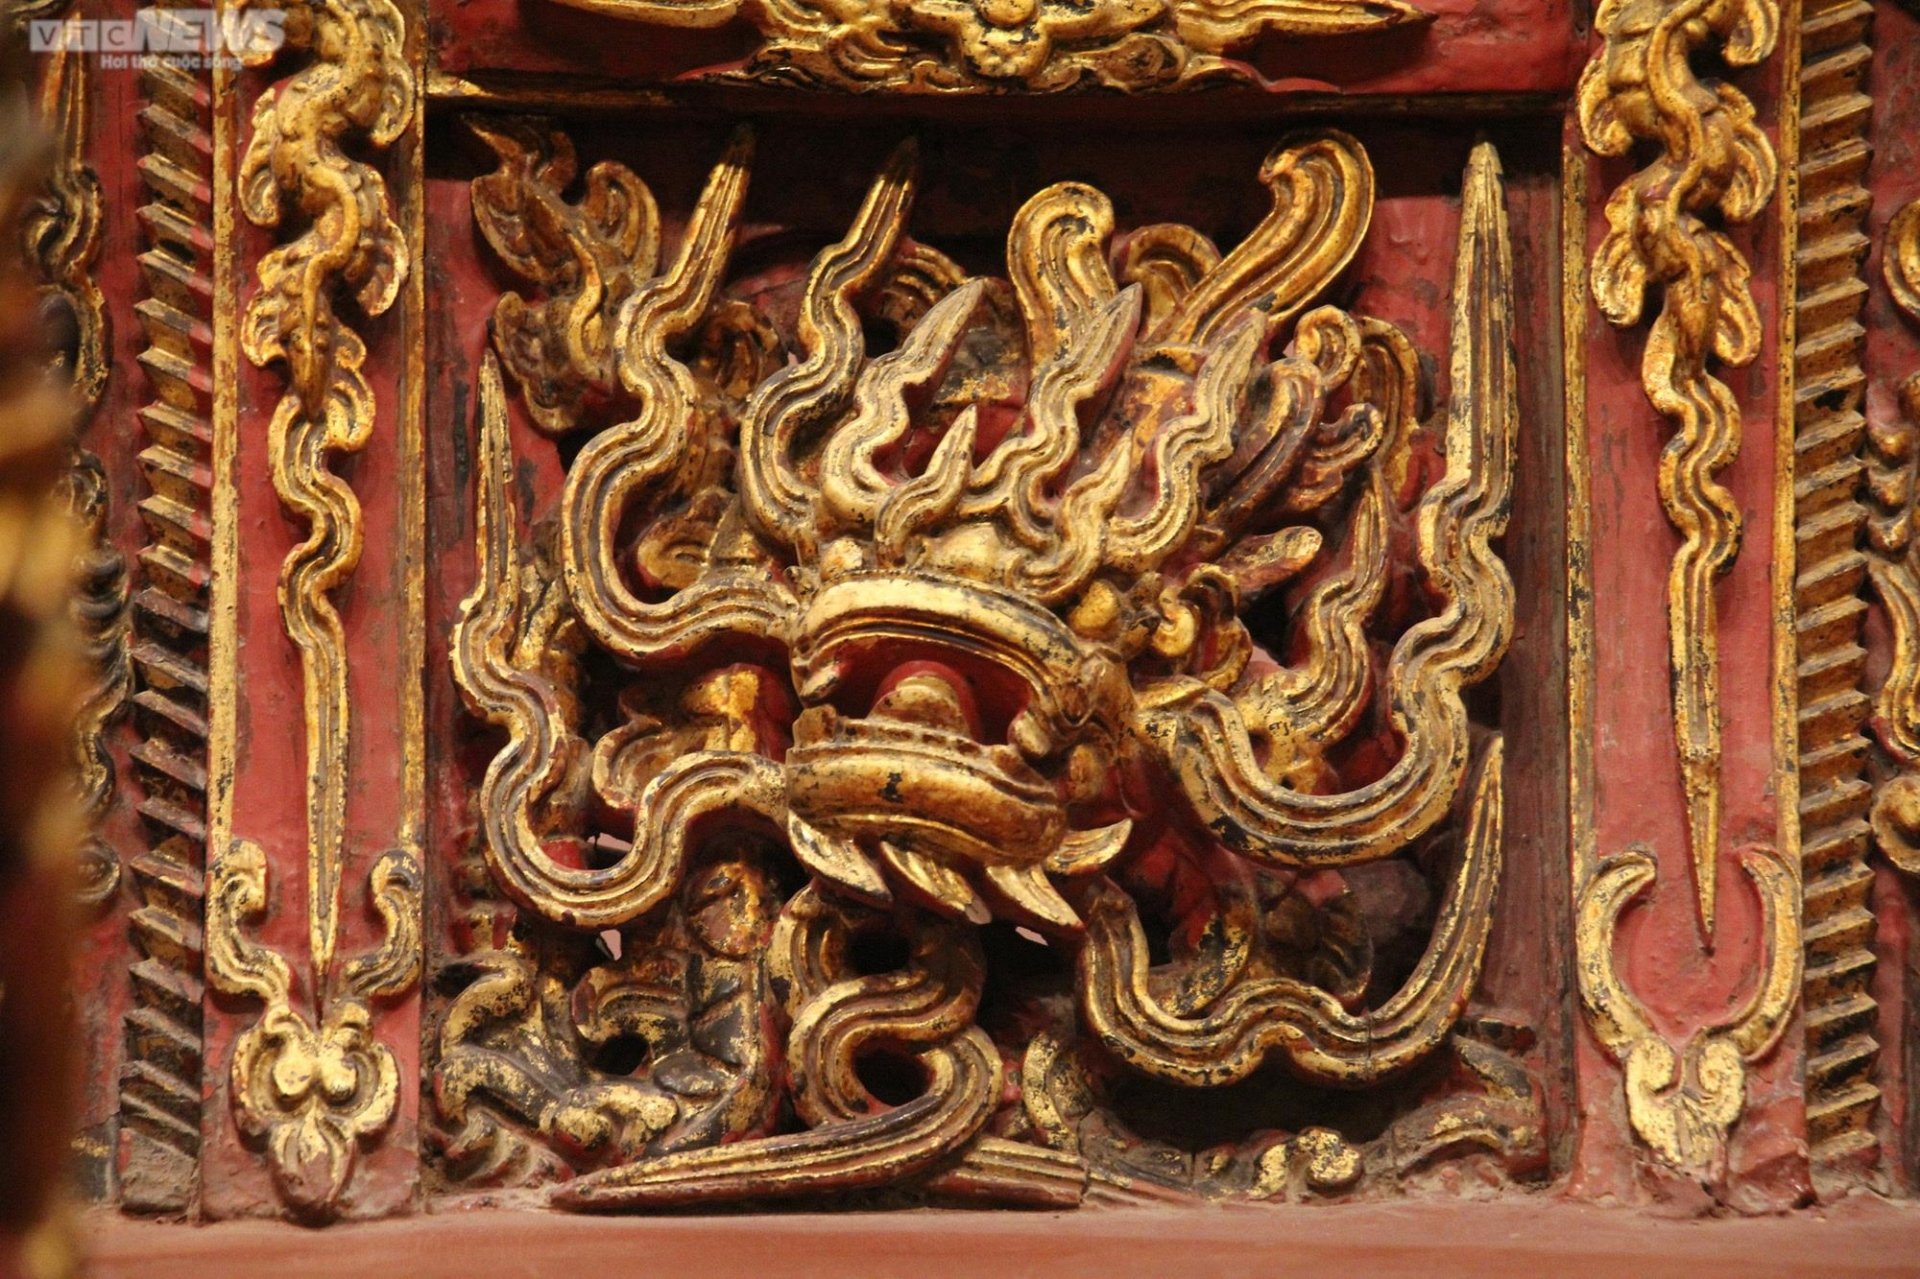 Chiêm ngưỡng ngai thờ độc nhất vô nhị hơn 300 năm tuổi ở Thái Bình - 12